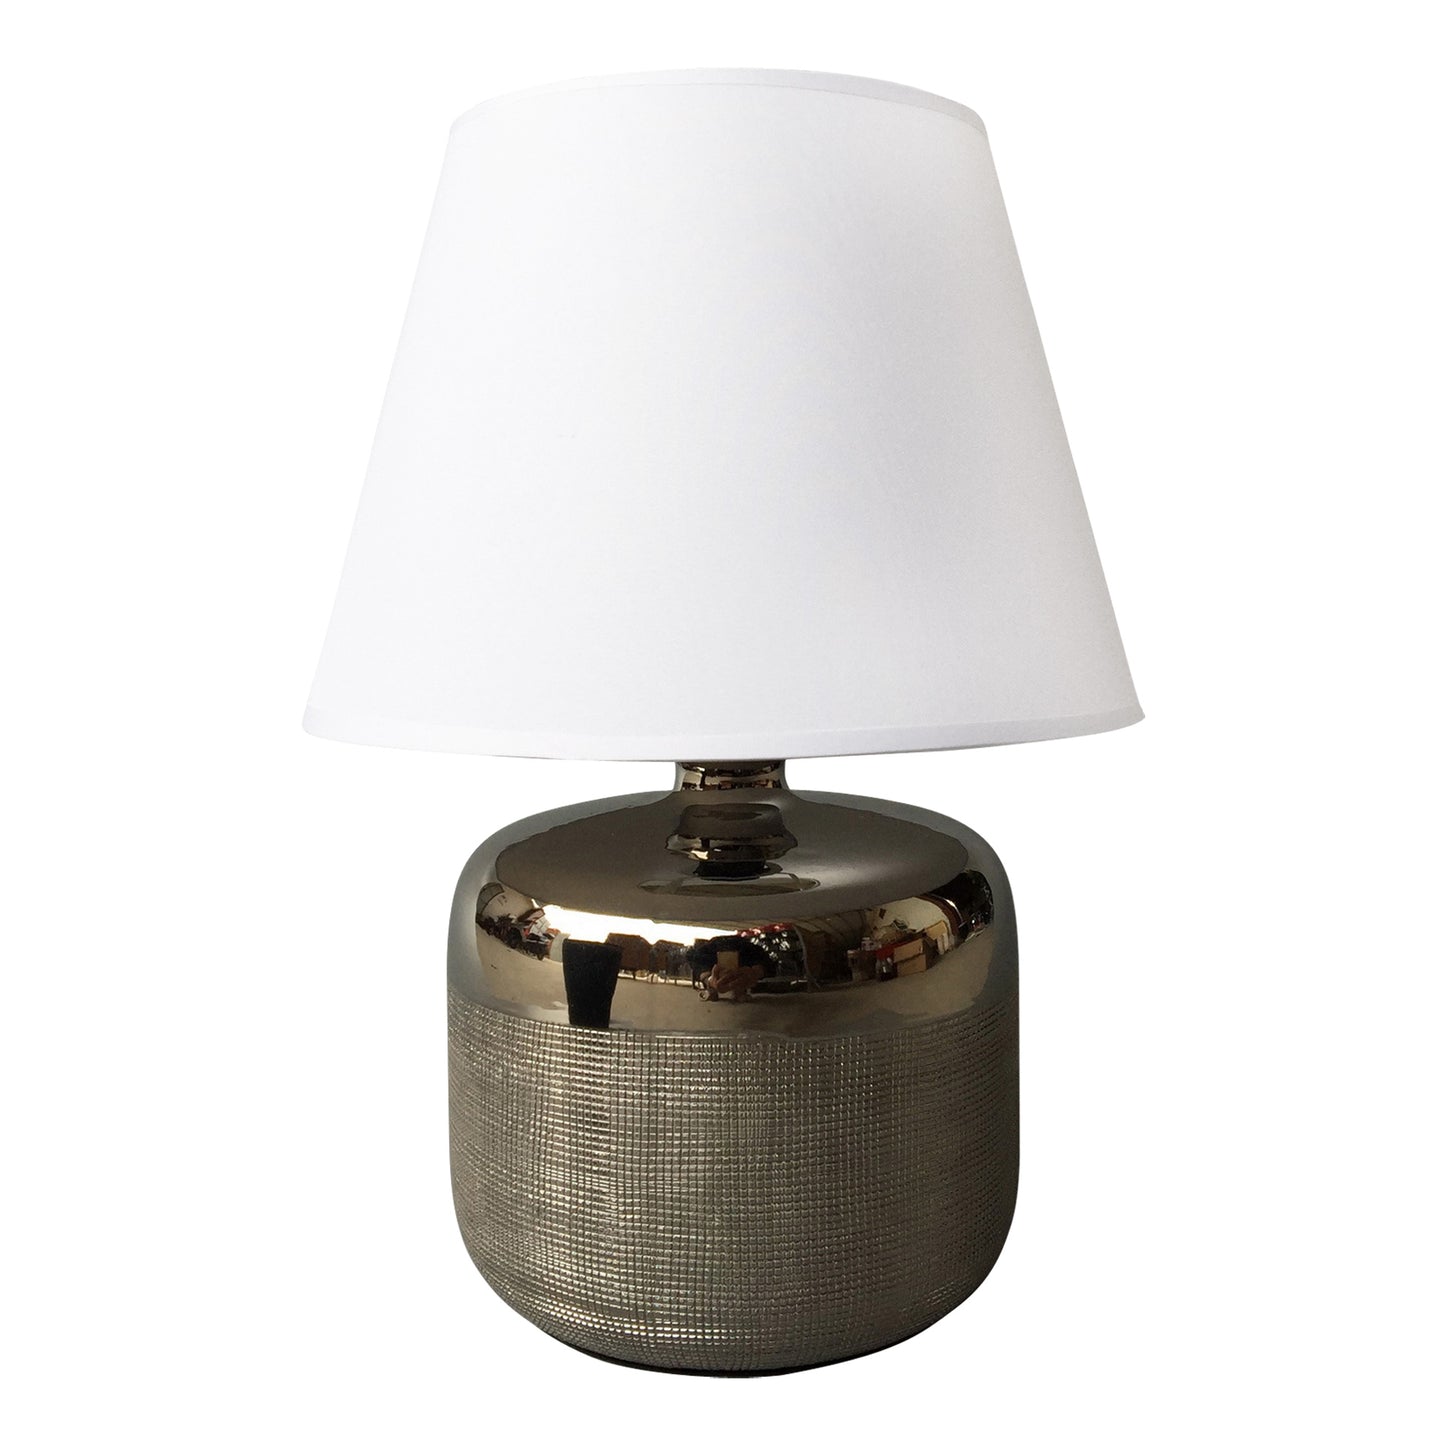 Homea Keramik Tischlampe 34cm Tischleuchte Nachttisch Lampe Leuchte Chrom Optik